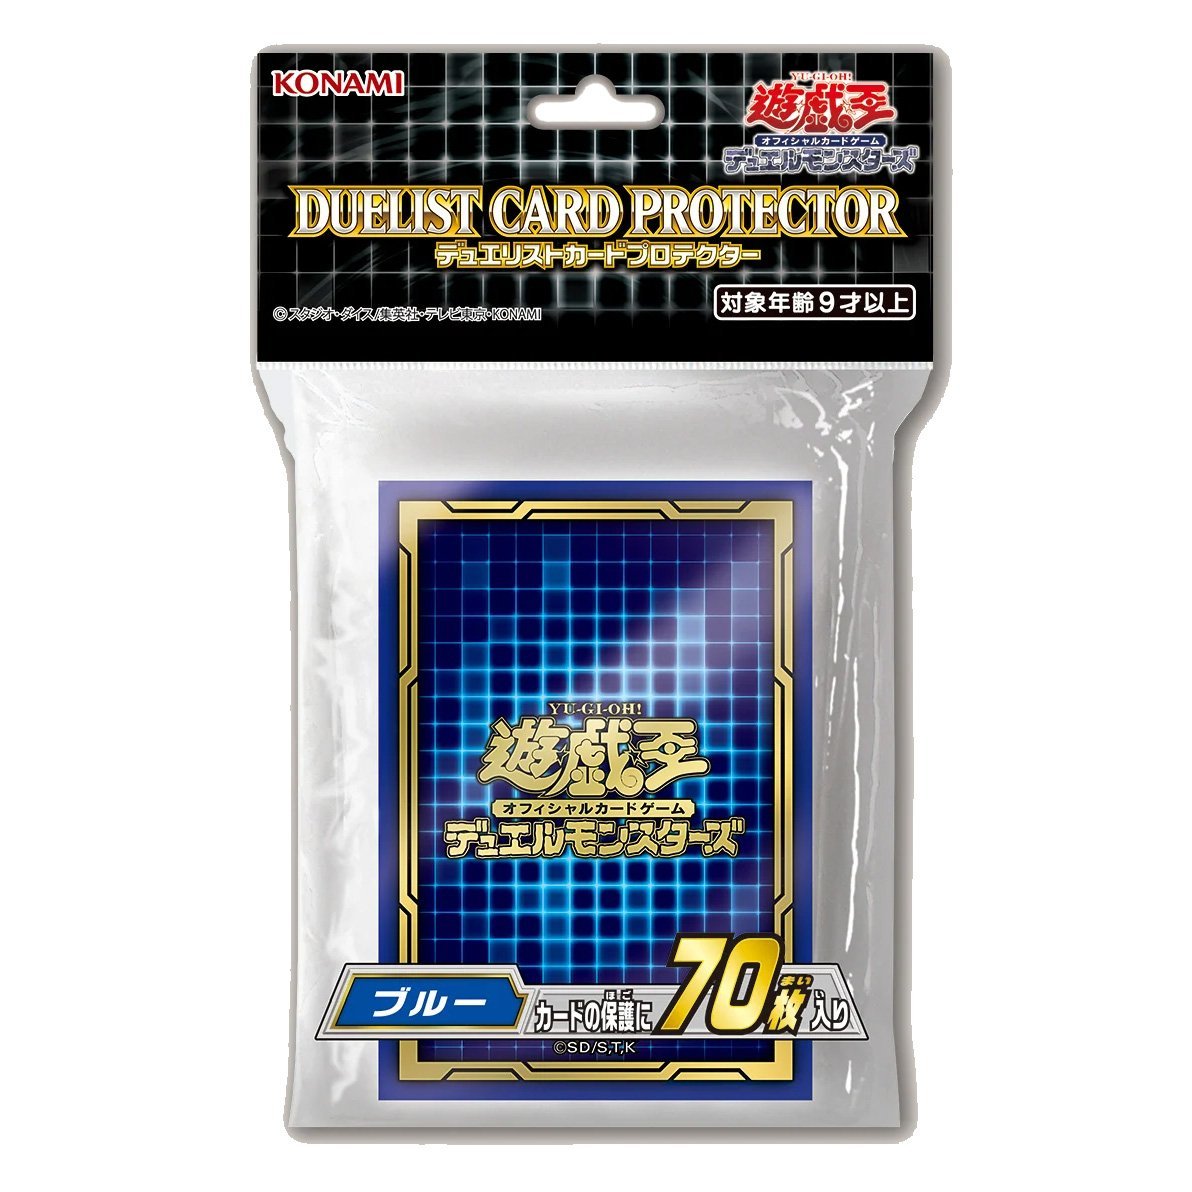 Yu-Gi-Oh! OCG Duelist Card Protector "Blue" (CG1731)-Konami-Ace Cards & Collectibles